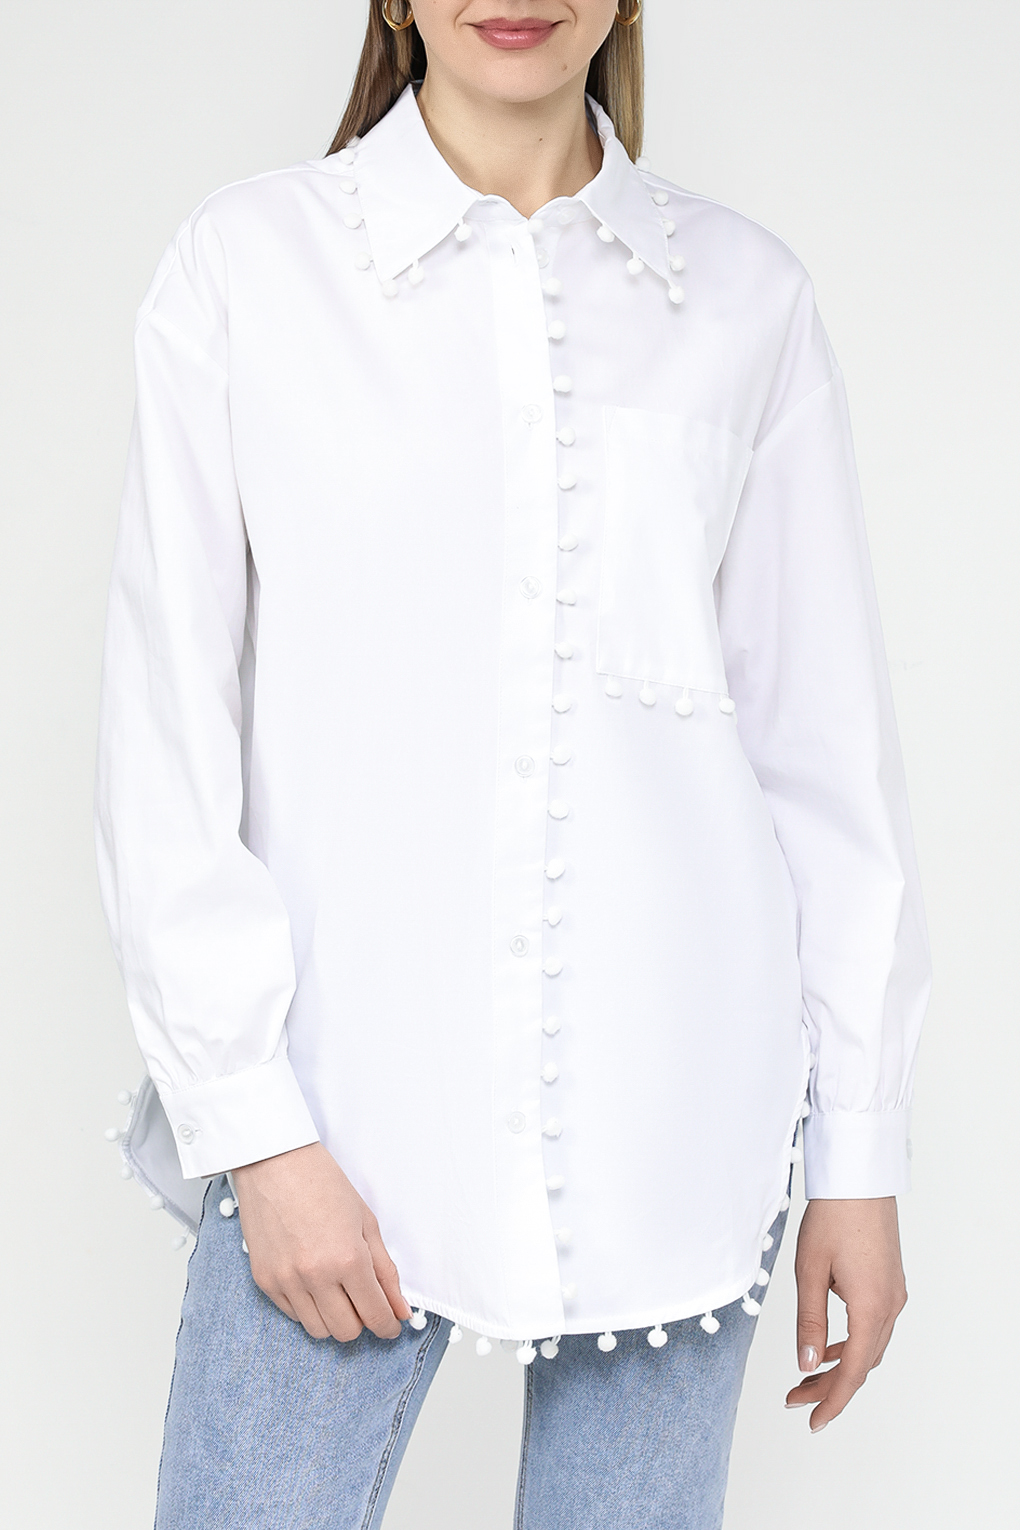 Рубашка женская Belucci BL24043592CD белая XL